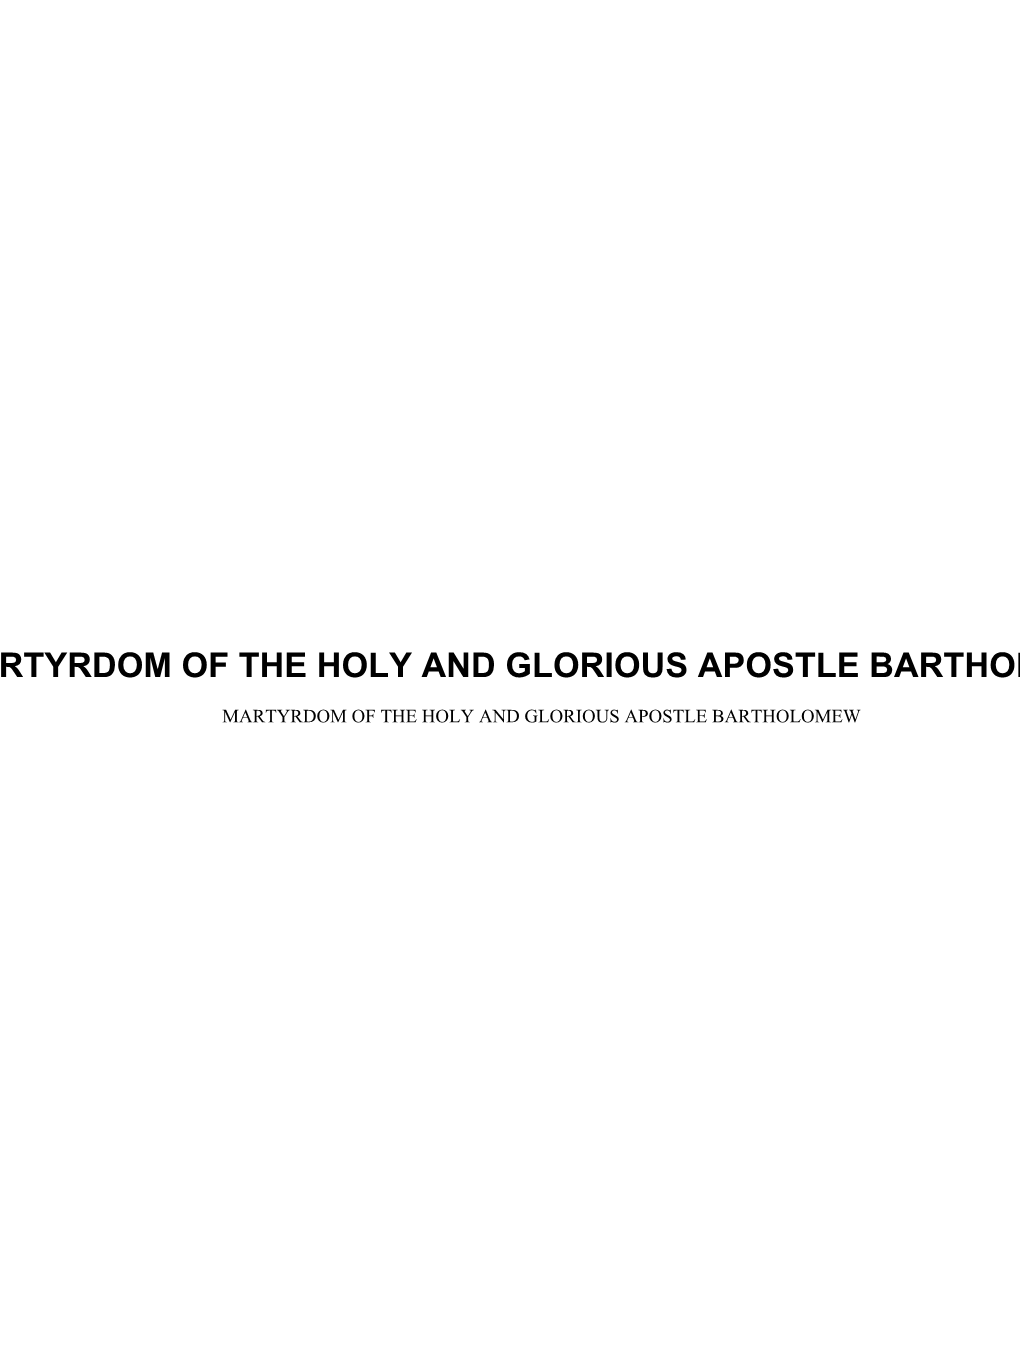 Martyrdom of the Holy and Glorious Apostle Bartholomew